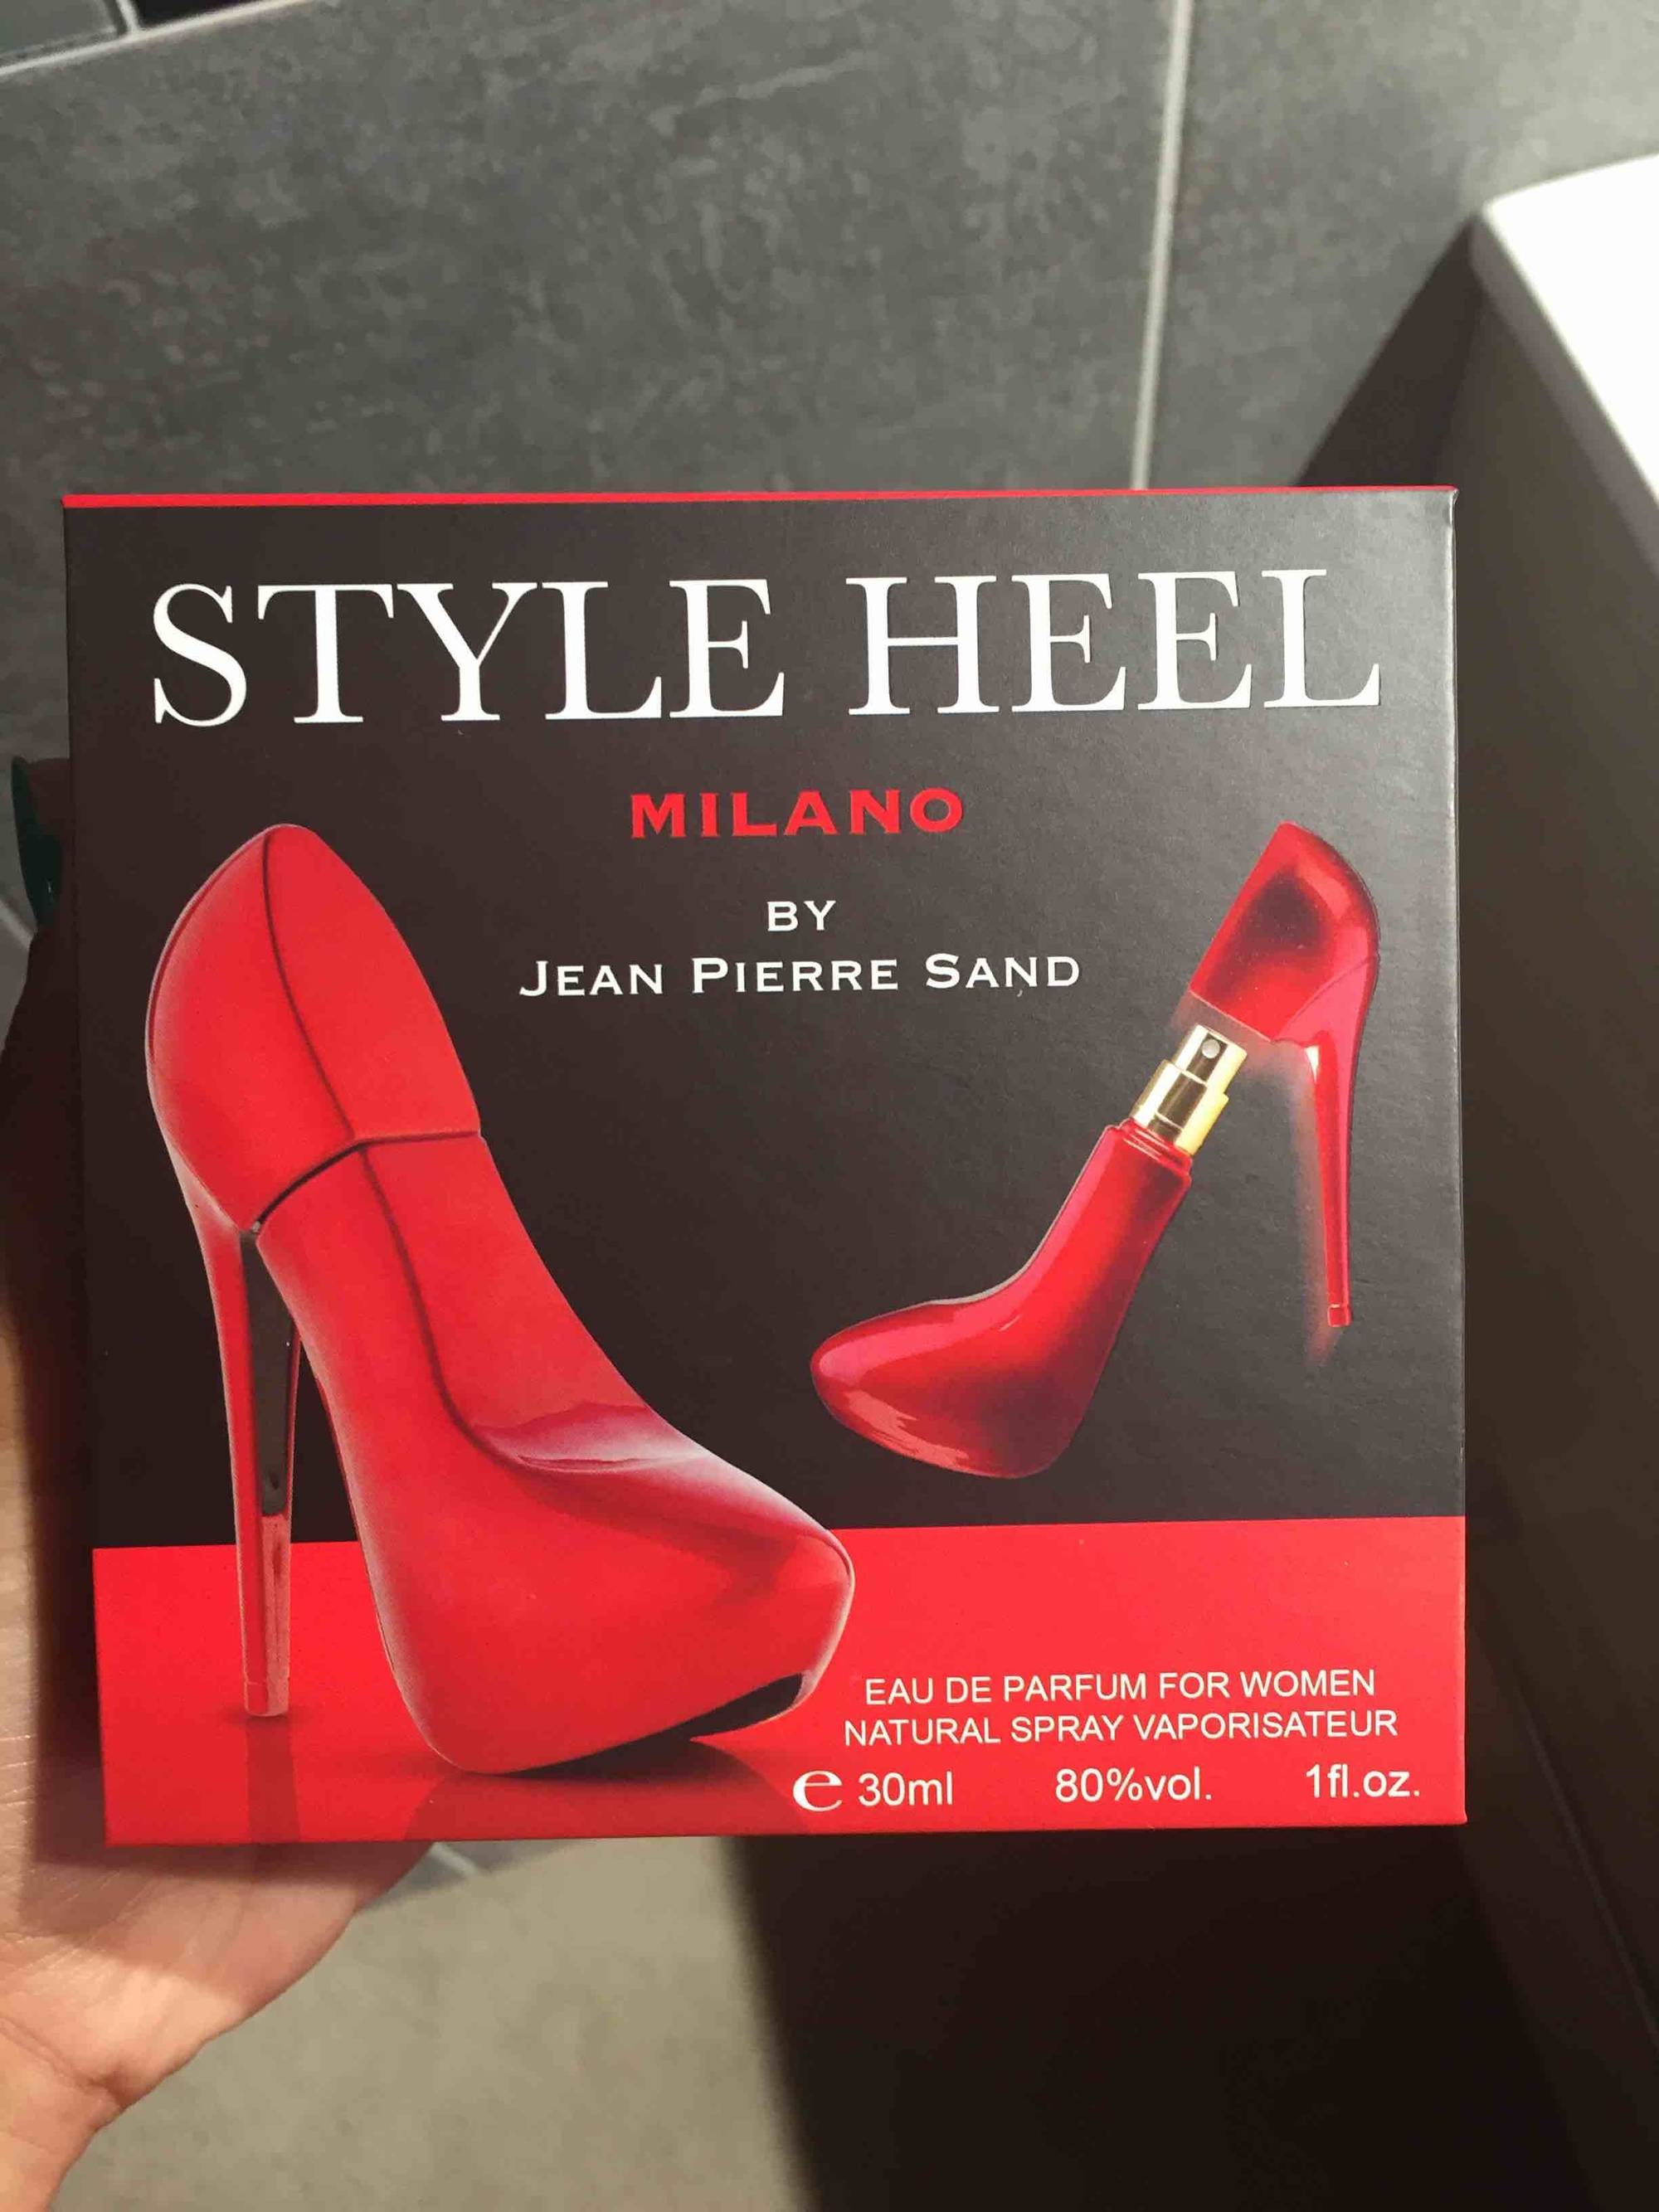 JEAN-PIERRE SAND - Style heel milano - Eau de parfum for women